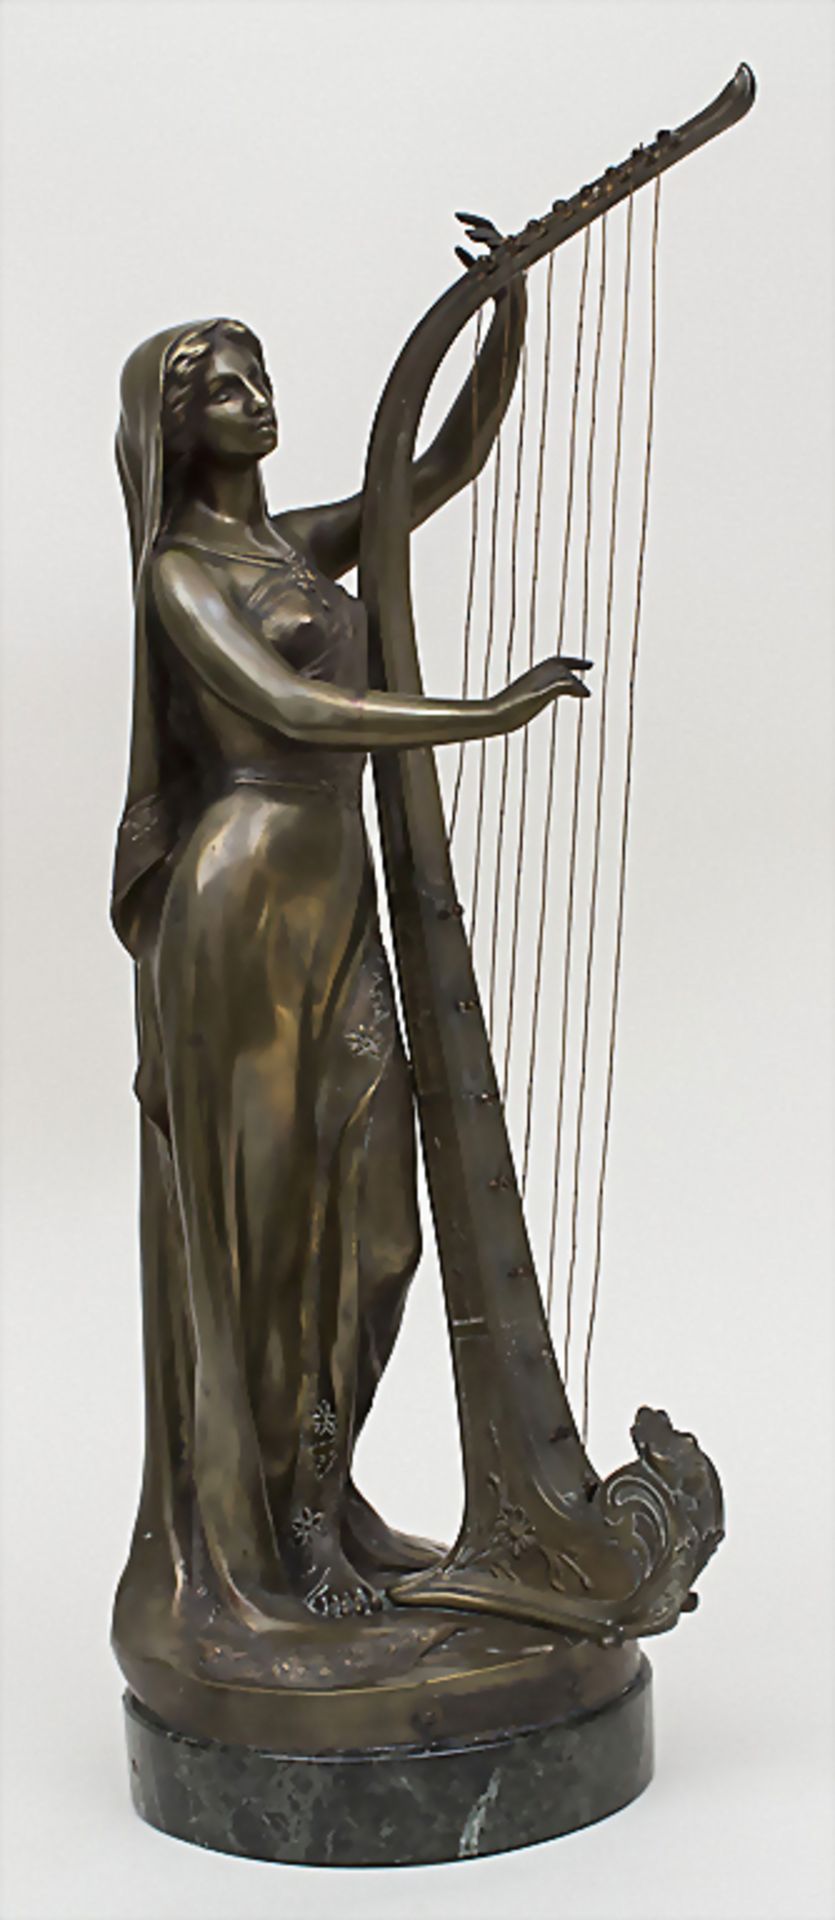 L` INSPIRATION, Théophile Francois Somme, 1871-1952Technik: Harfe spielende junge Fra